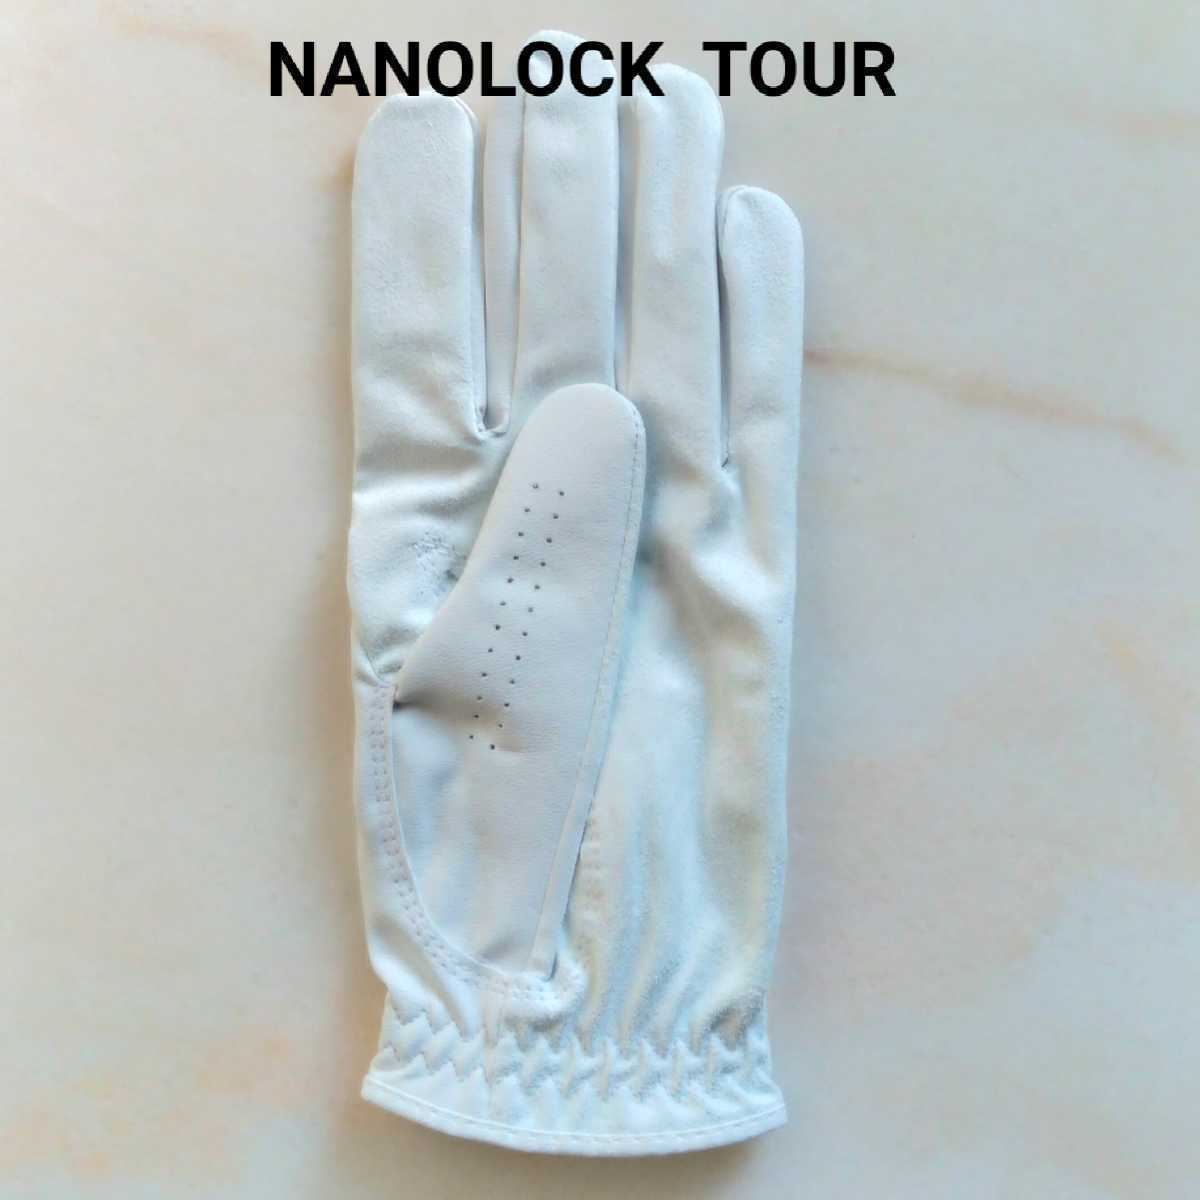 Fj nano блокировка Tour 22cm белый 2 шт. комплект foot Joy Golf перчатка TOUR новый товар не использовался анонимность рассылка 